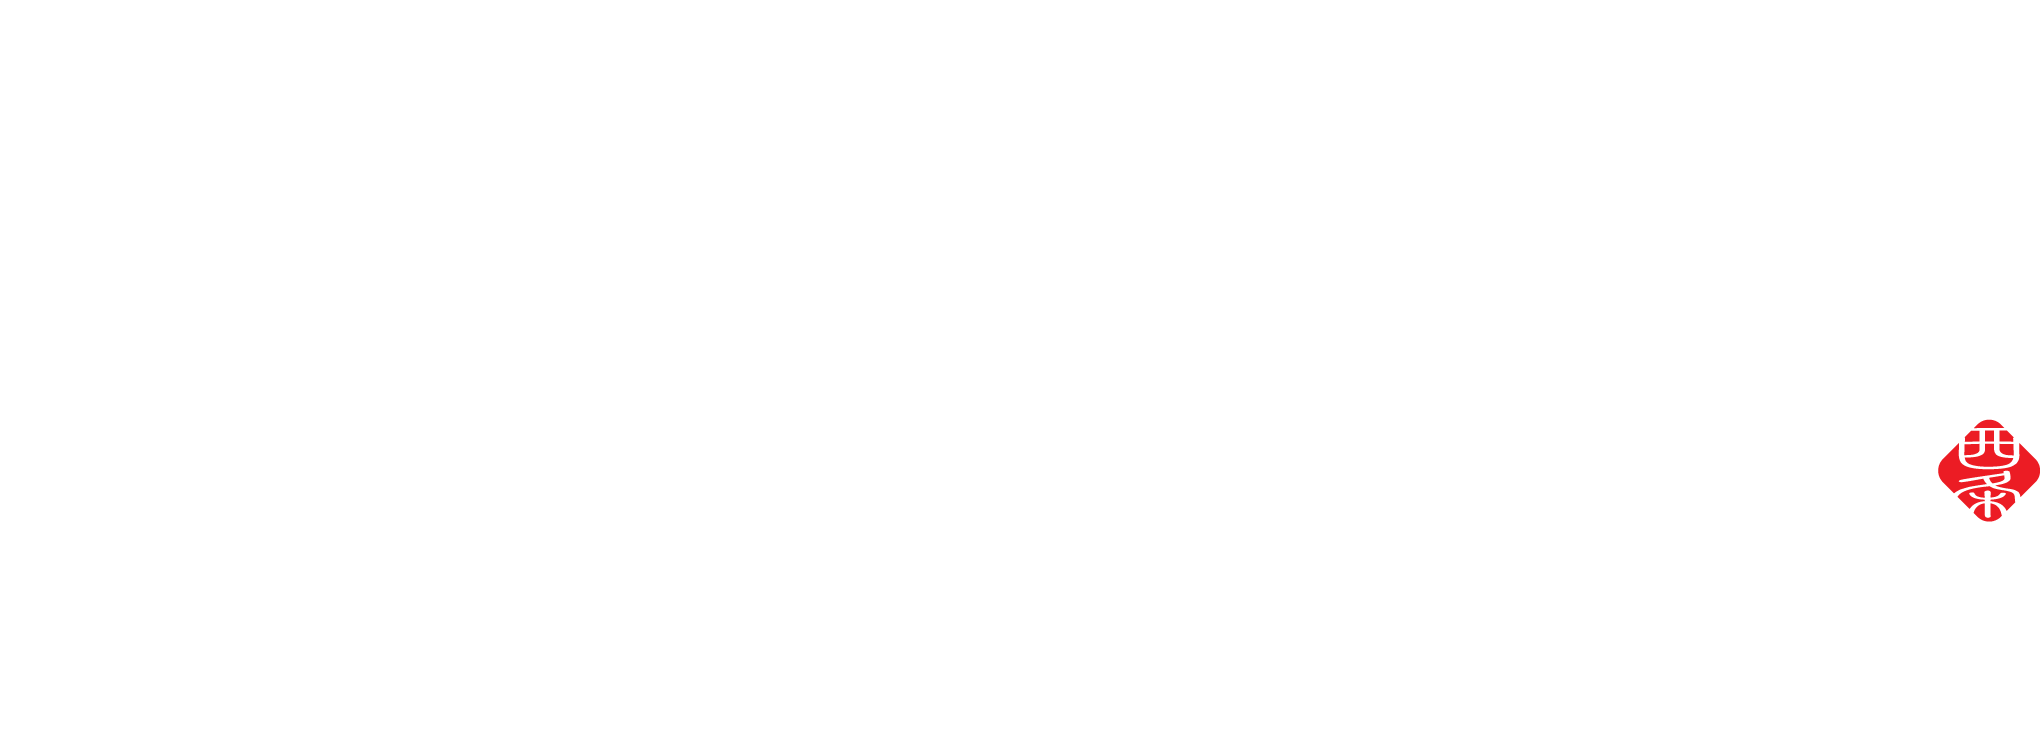 Saijo Hand rool & Kushivaki